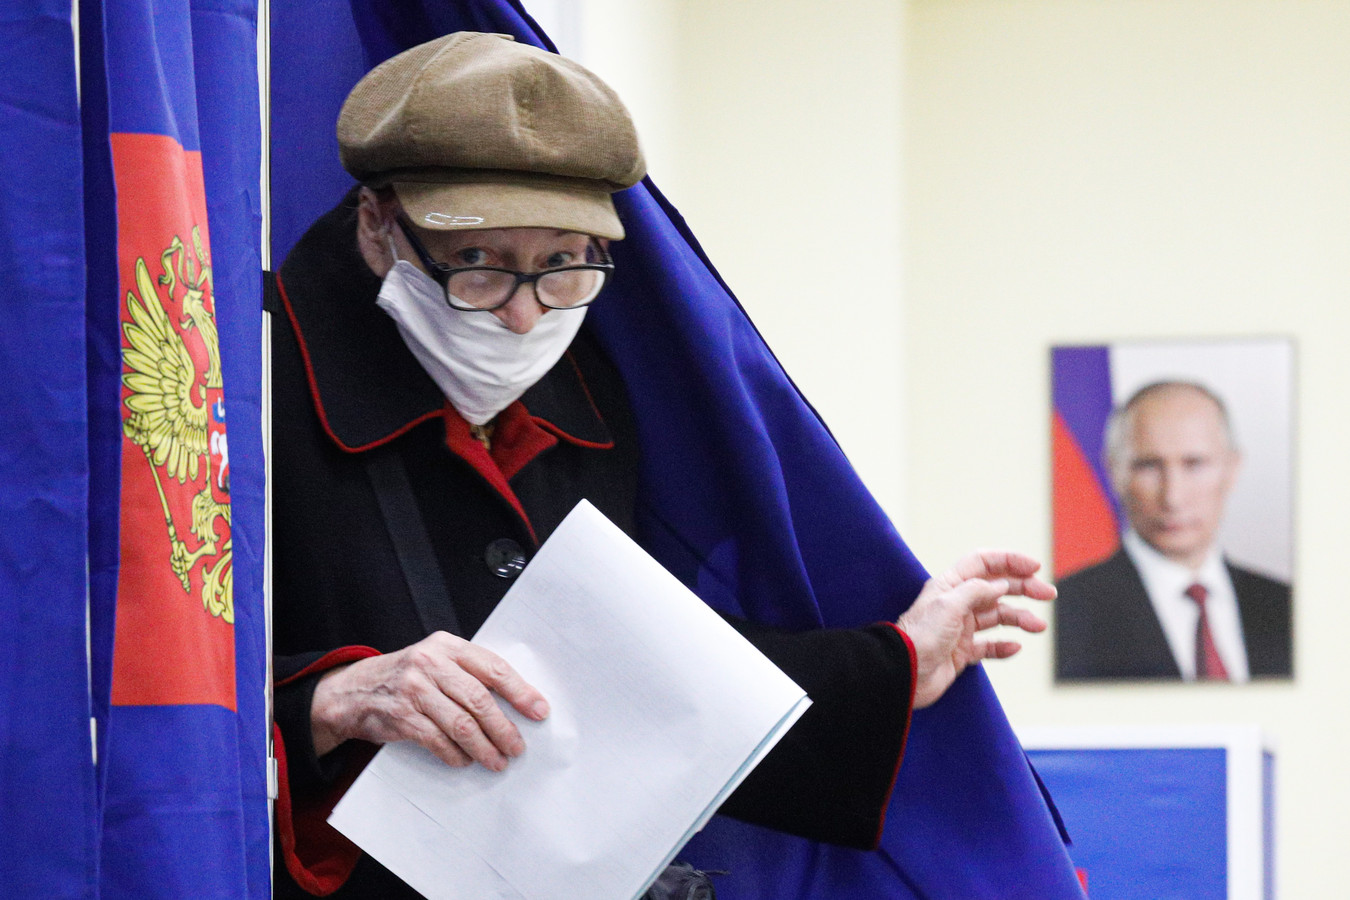 Een vrouw bij een stembureau loopt langs een portret van Poetin.